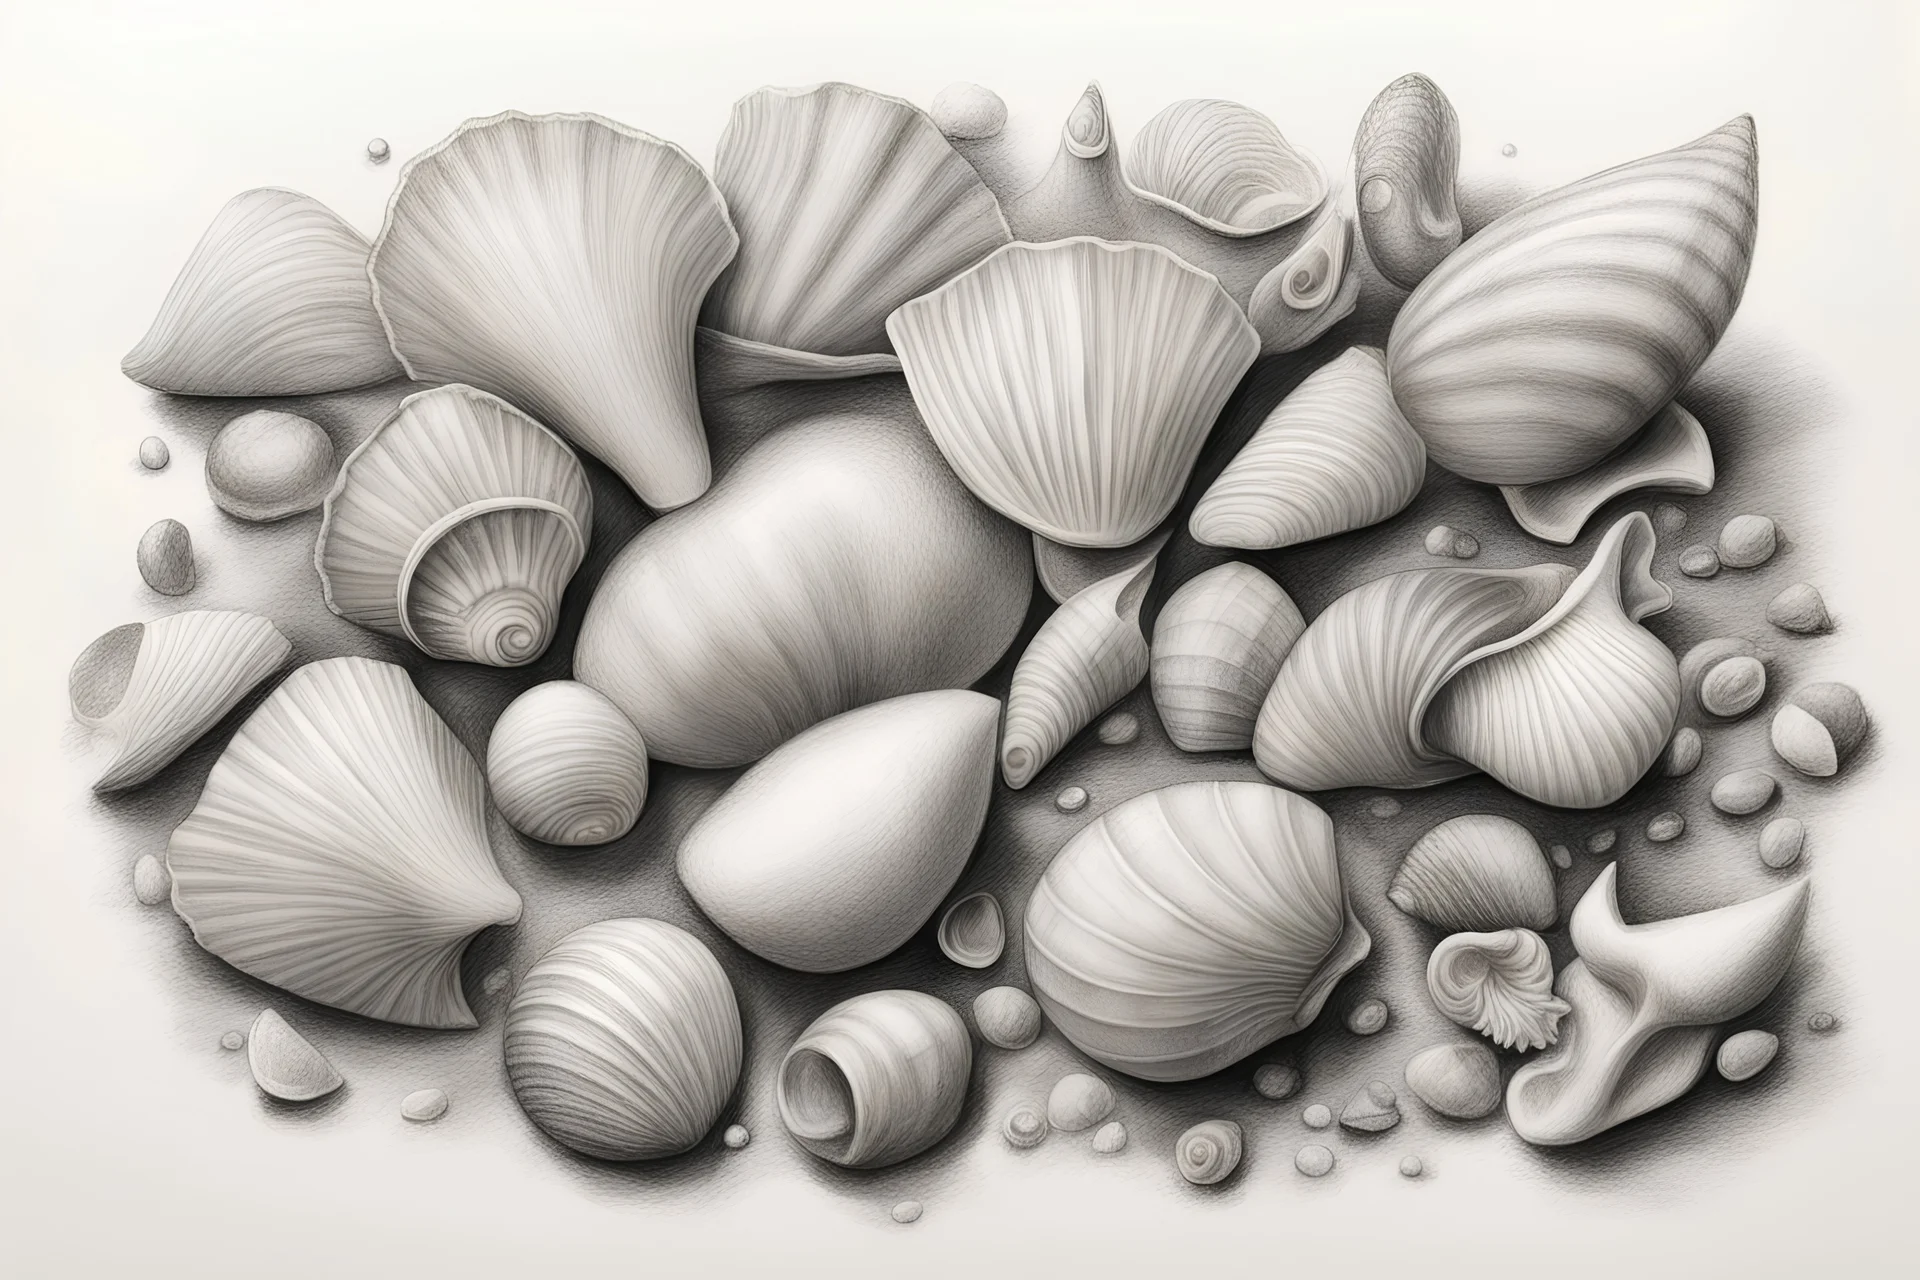 A bunch of seashells drawn in pencil